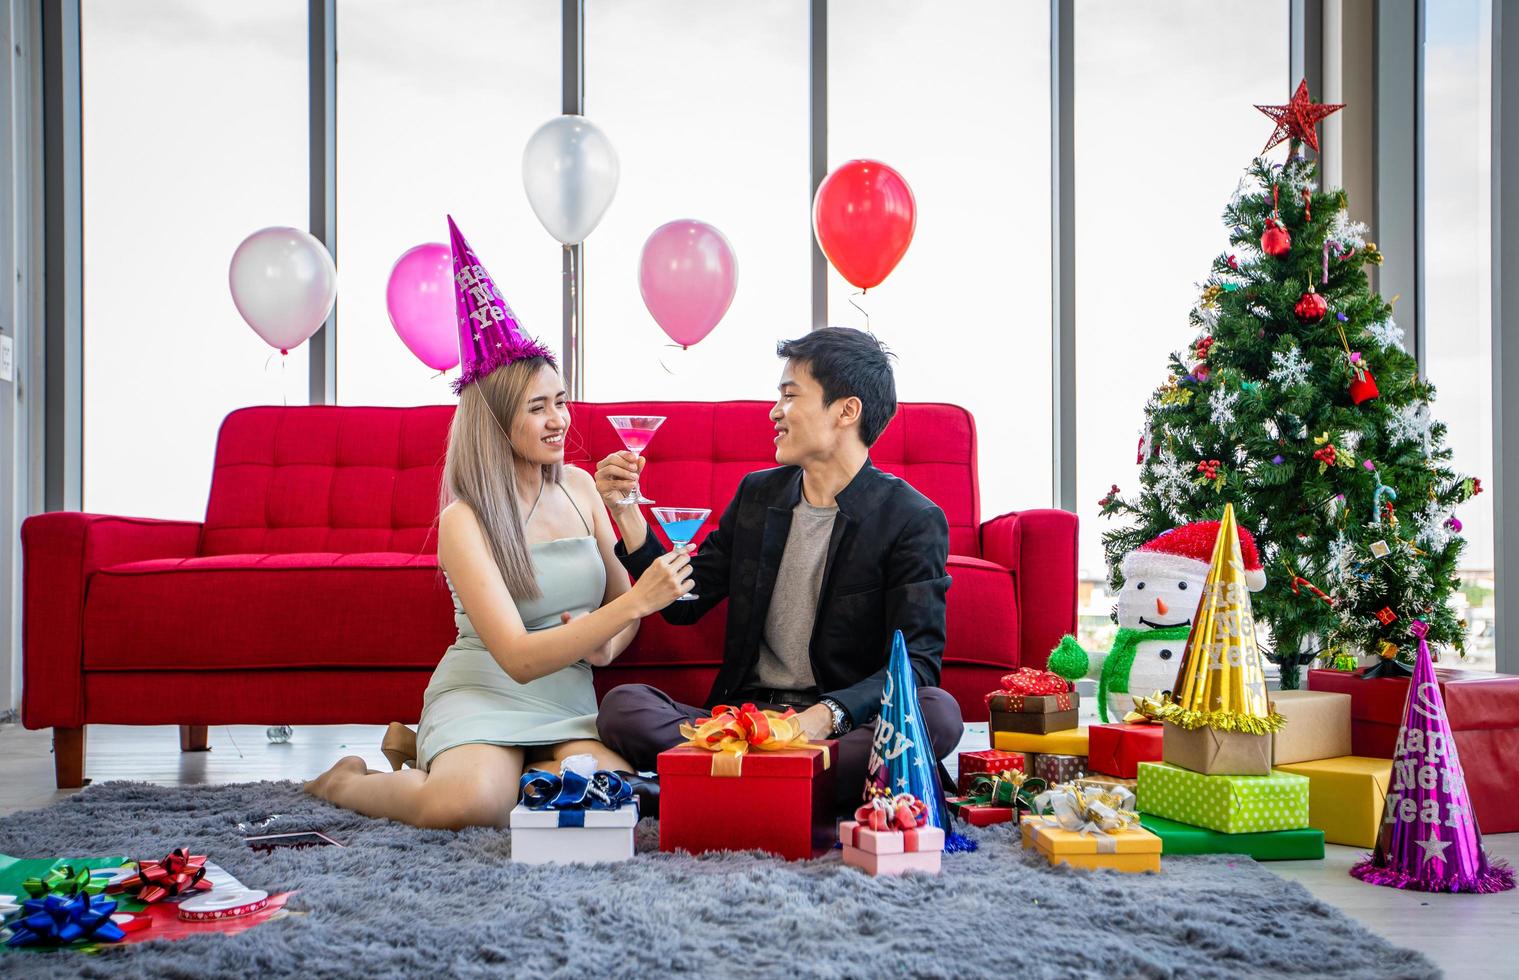 pareja asiática amante de la fiesta con bebidas alcohólicas de cerveza y jóvenes disfrutando en un bar brindando cócteles con regalo de navidad en vacaciones de navidad y feliz patty de año nuevo foto